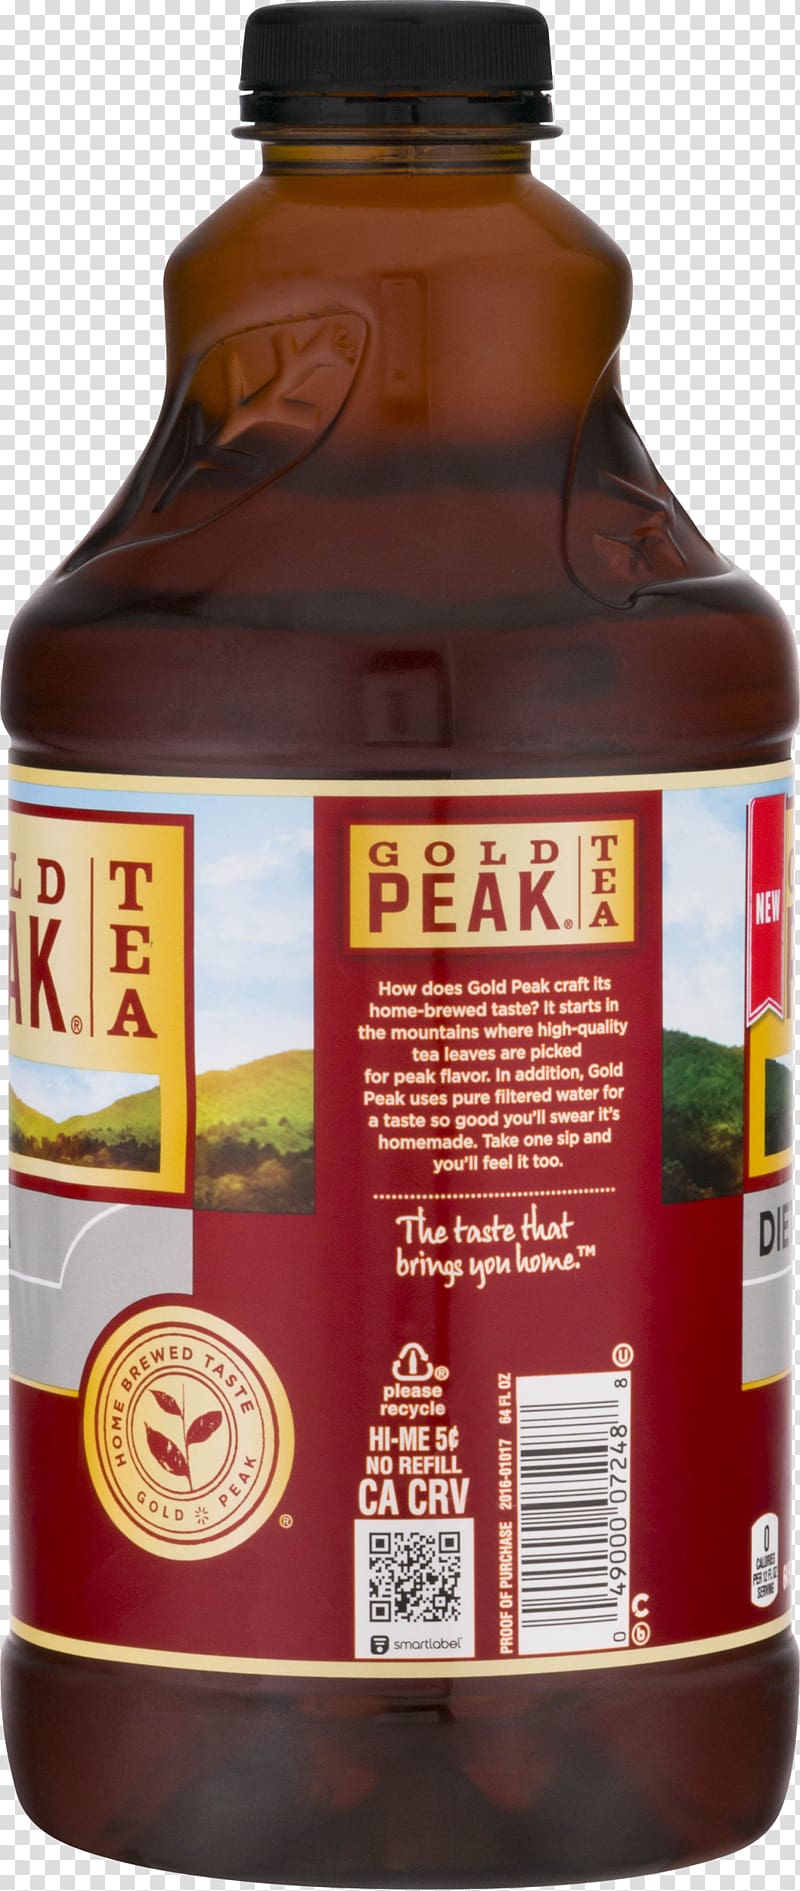 Gold Peak Tea Flavor Fluid ounce, tea transparent background PNG clipart